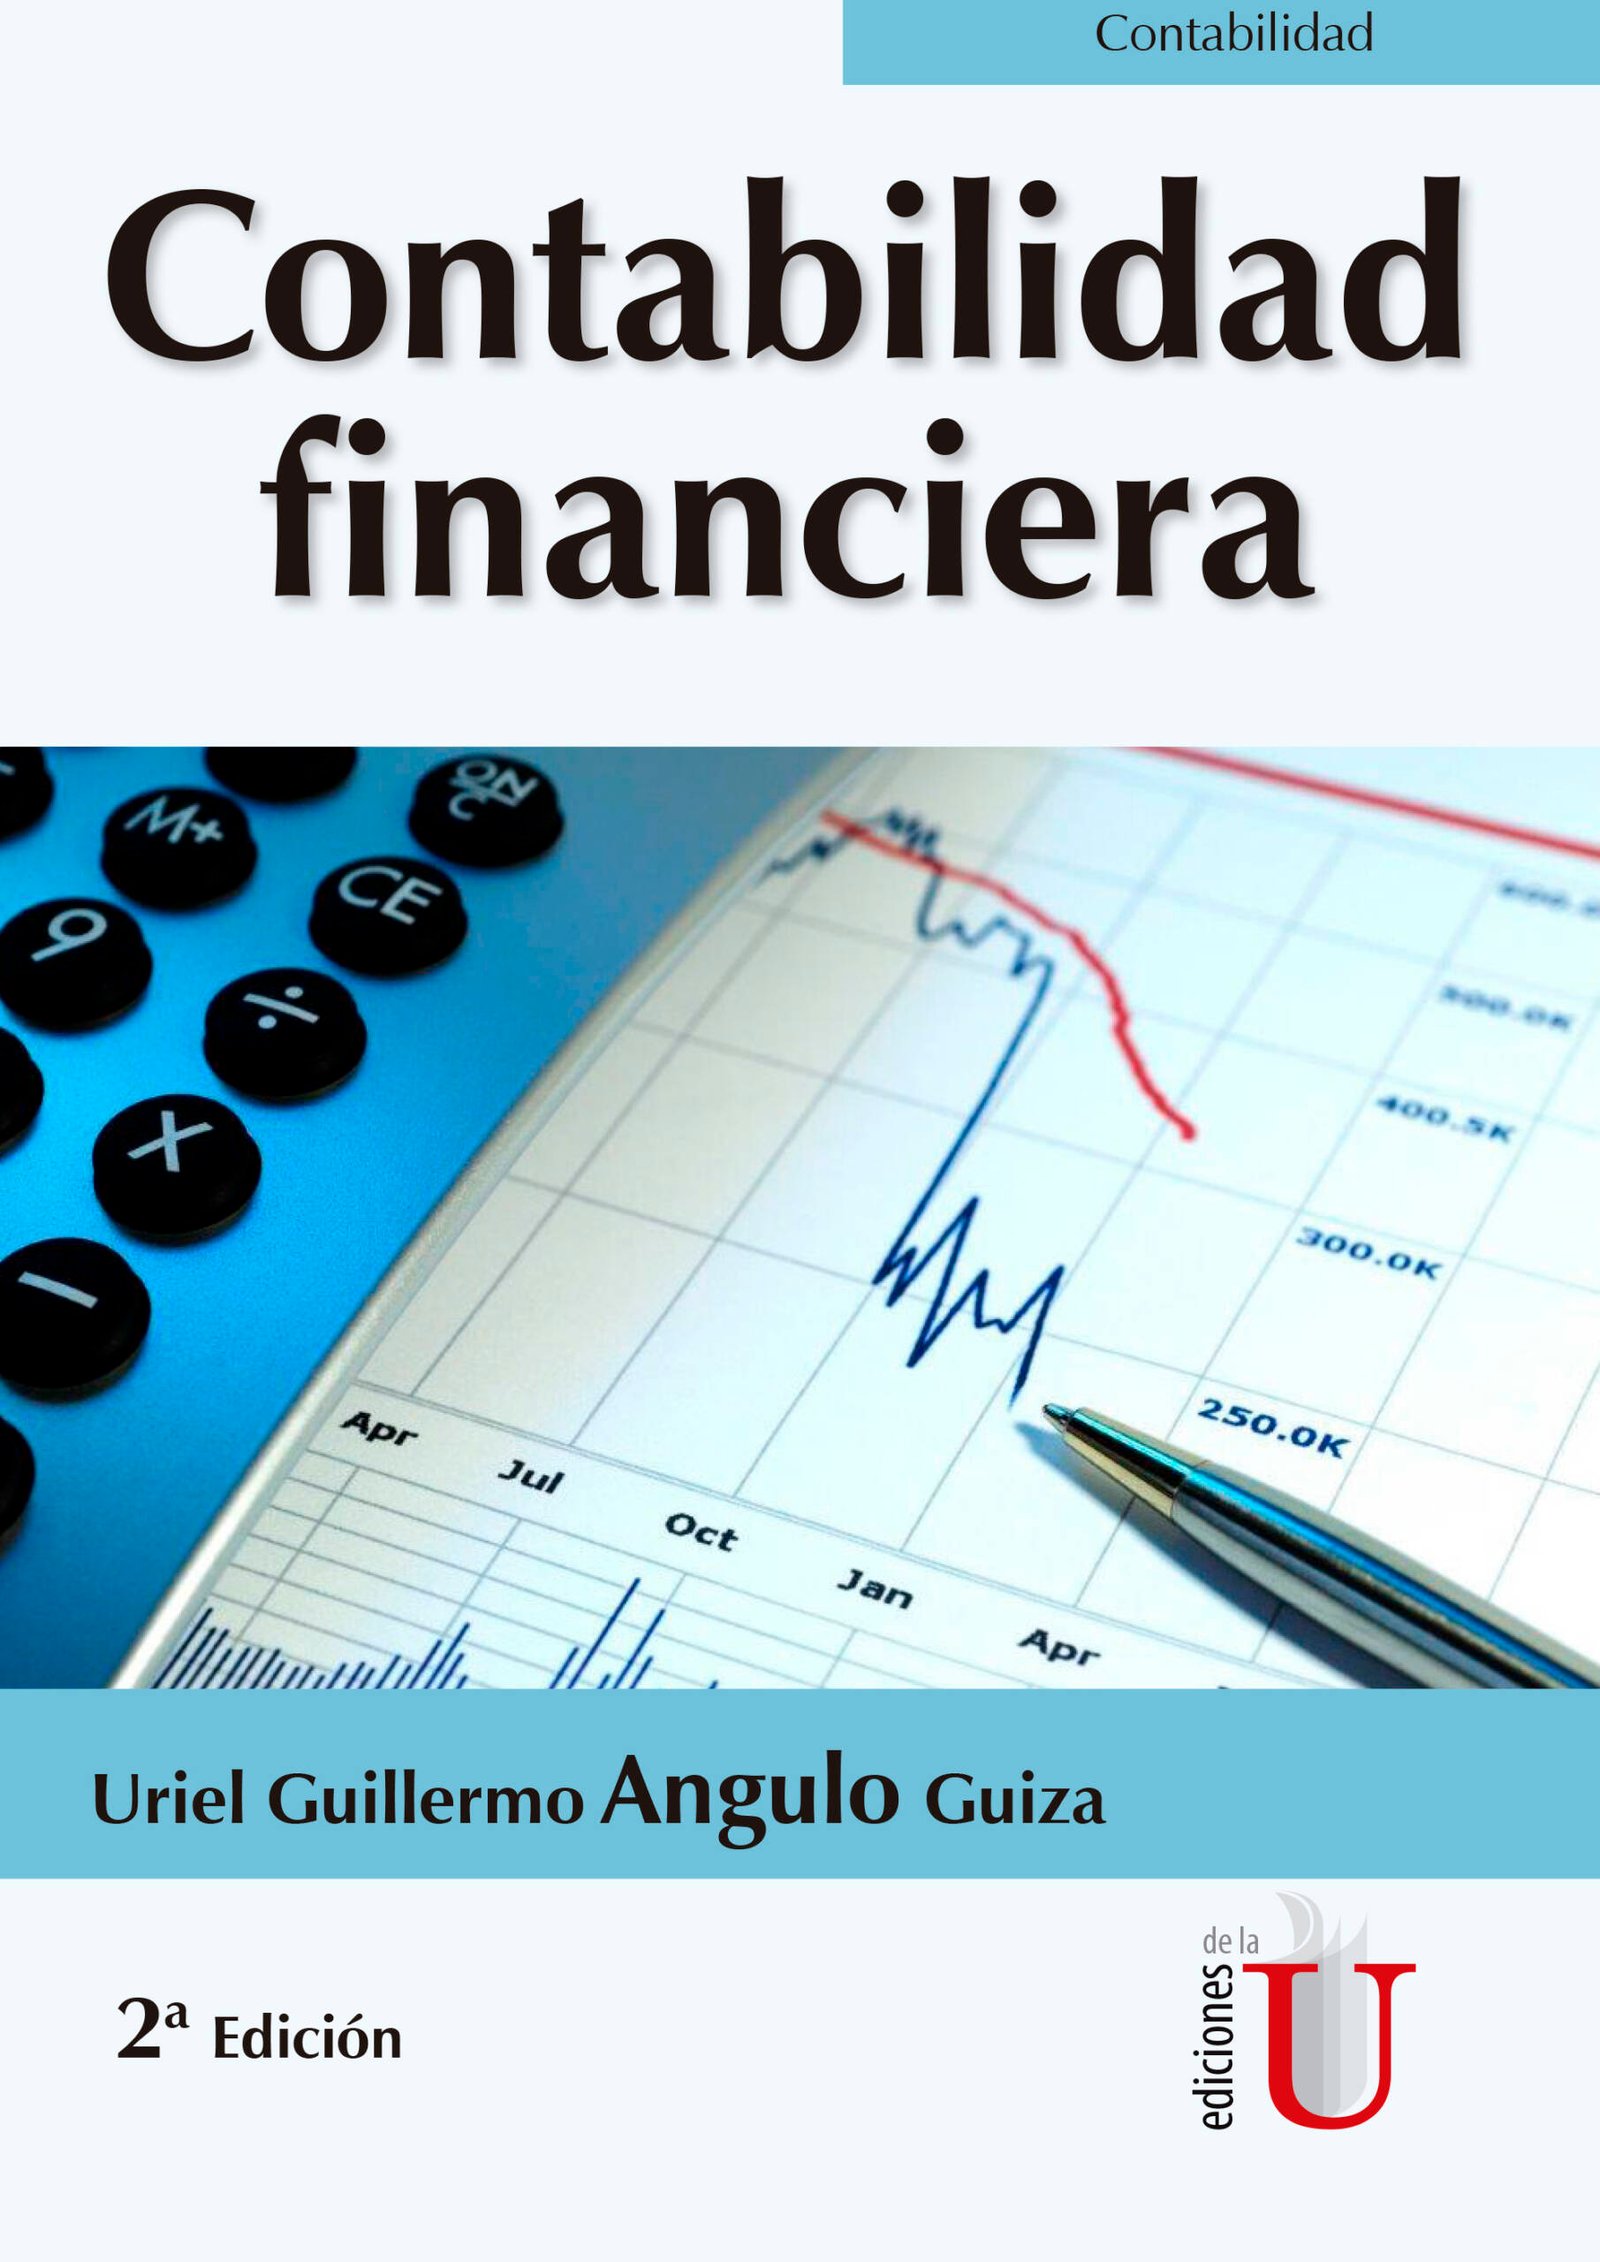 Comerciante Nacarado semestre Contabilidad financiera 2ª Edición - Ediciones de la U - Librería - Compra  ahora